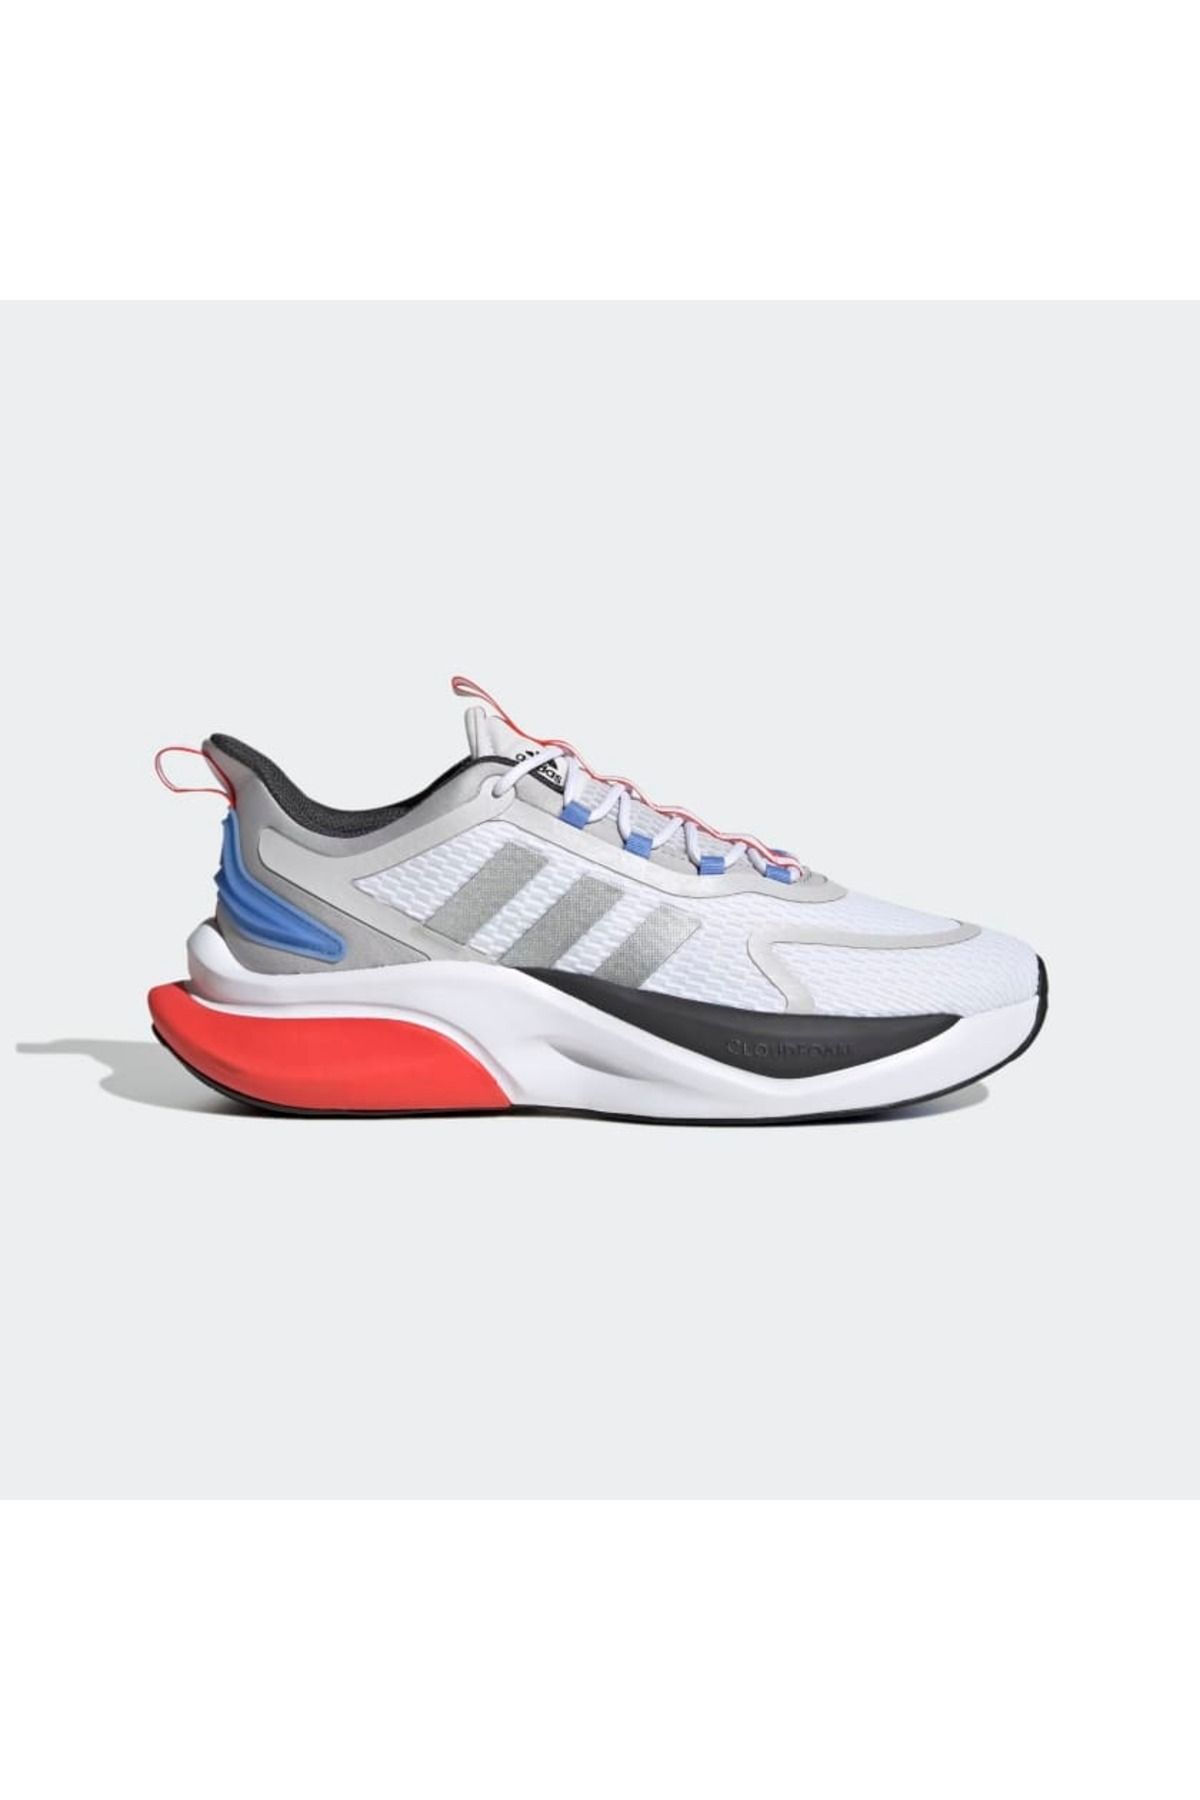 adidas Alphabounce Erkek Koşu Ayakkabısı